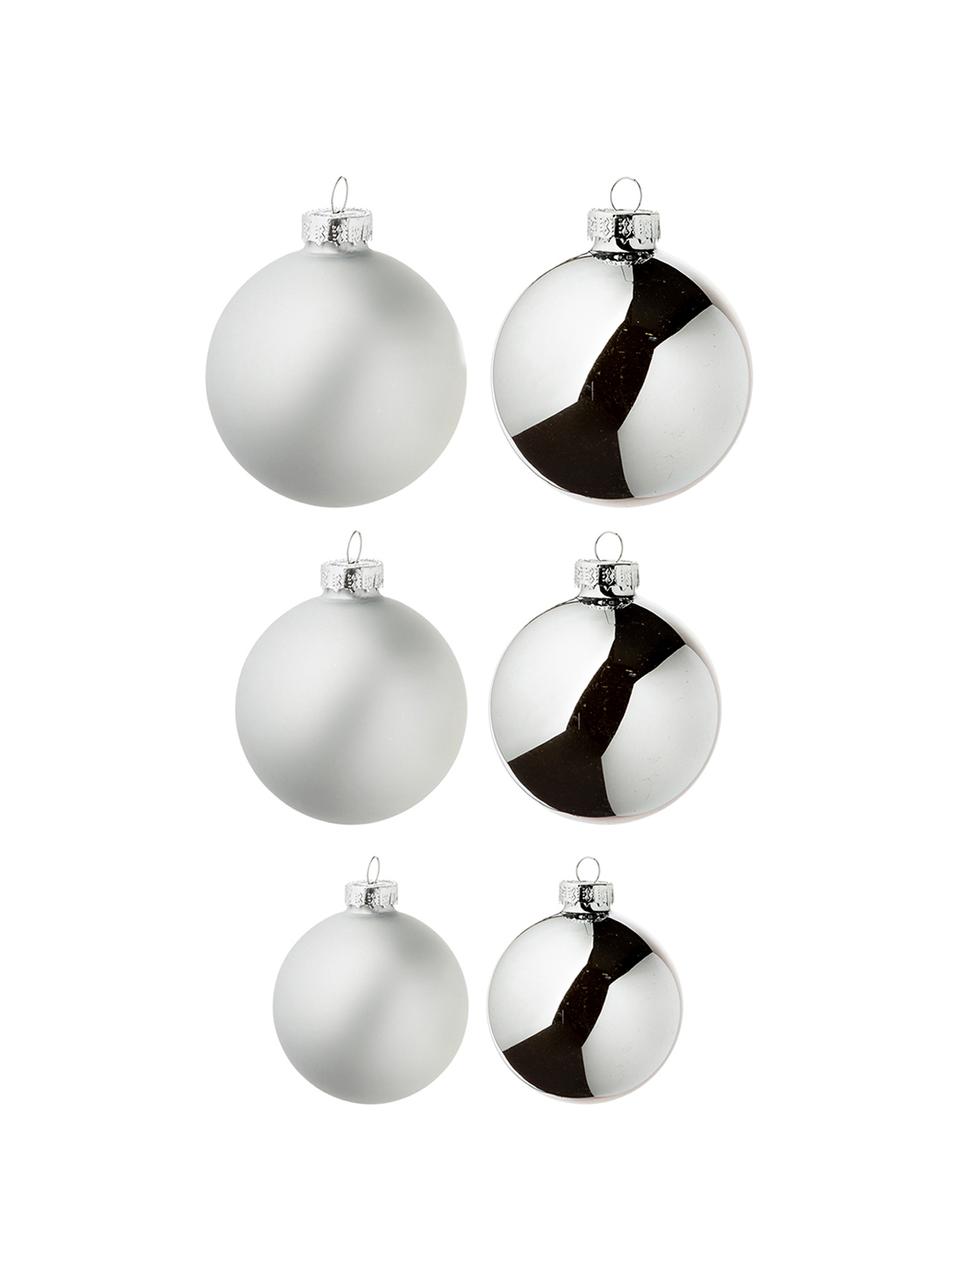 Kerstballenset Nessa, 26-delig, Glas, Zilverkleurig, Set met verschillende formaten